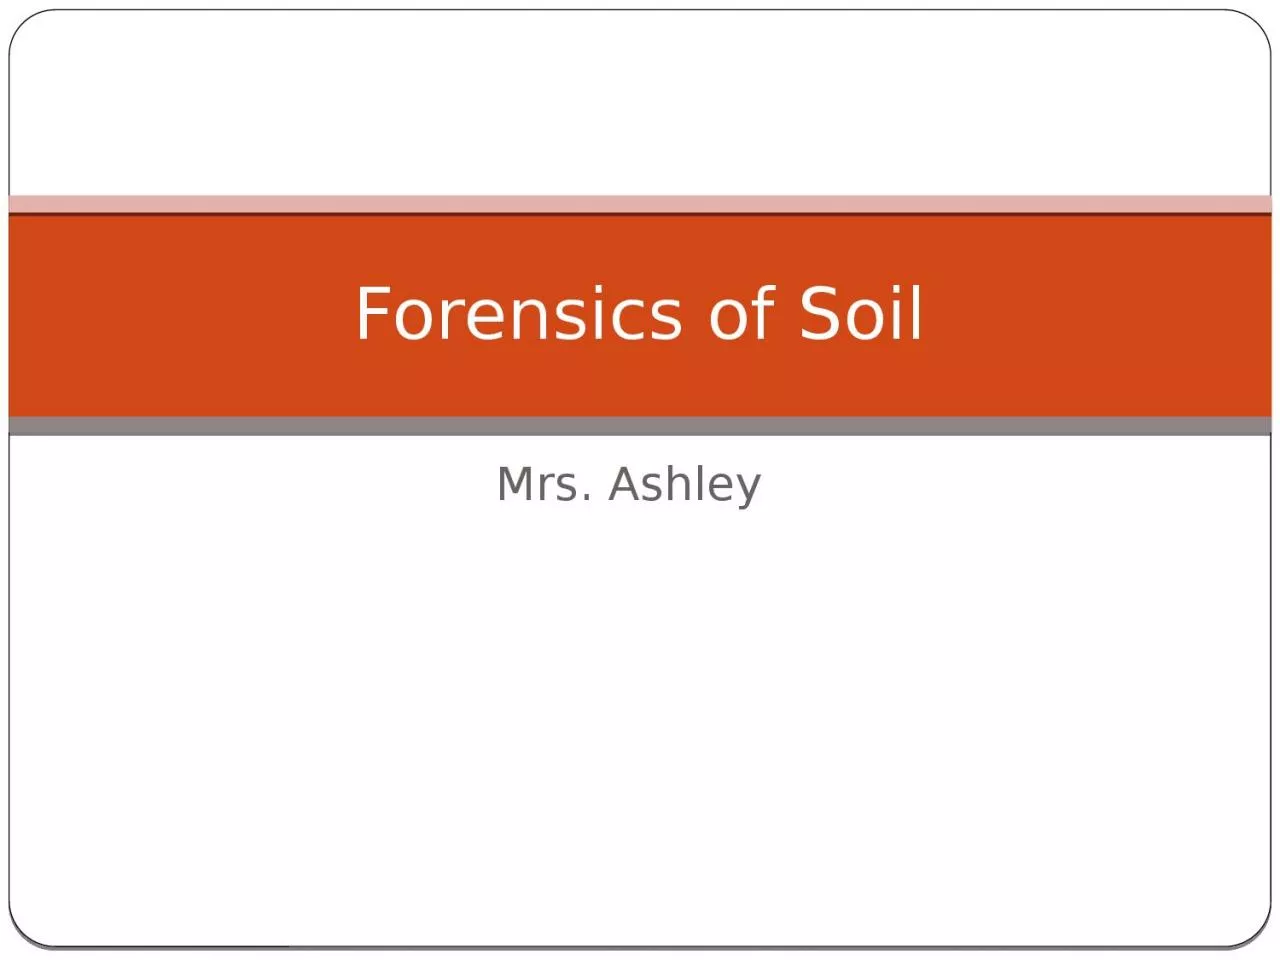 Mrs. Ashley Forensics of Soil